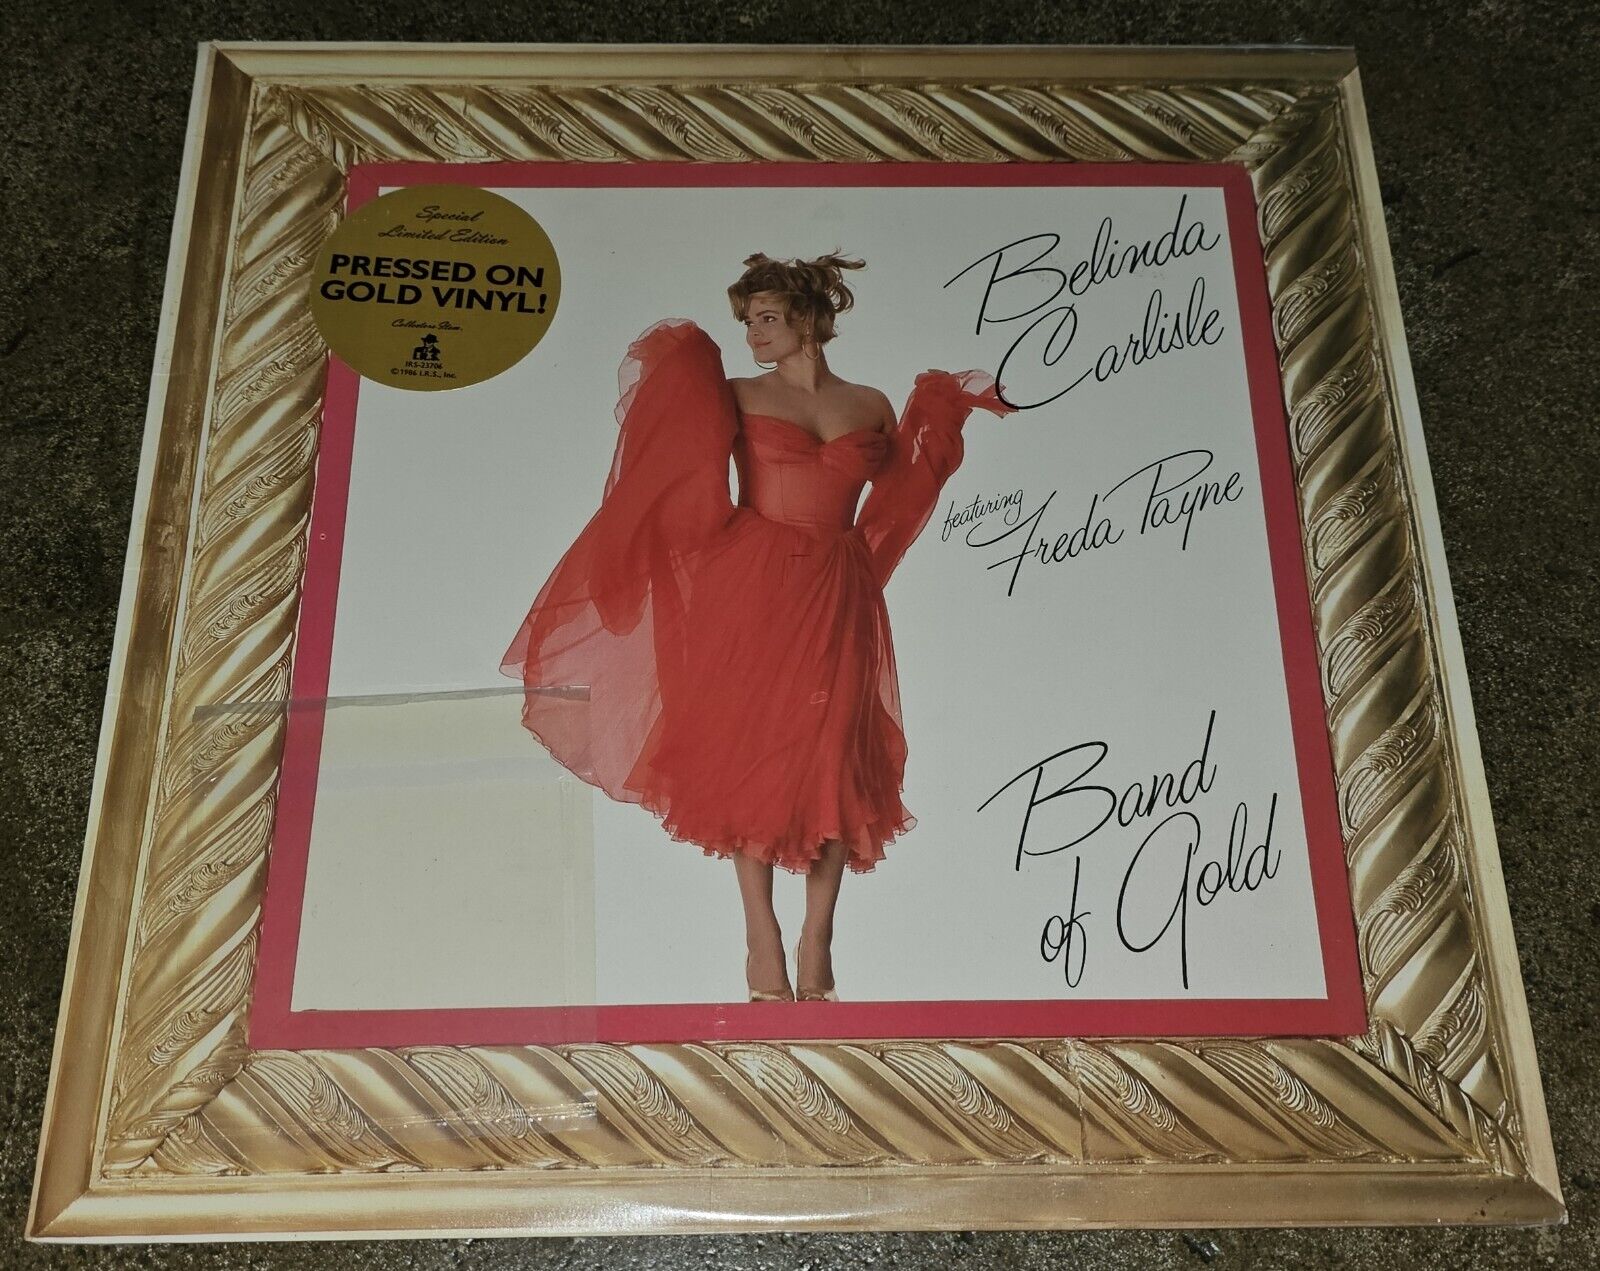 NEW Sealed BELINDA CARLISLE Freda Payne BAND OF GOLD Vinyl LP with HYPE Sticker!